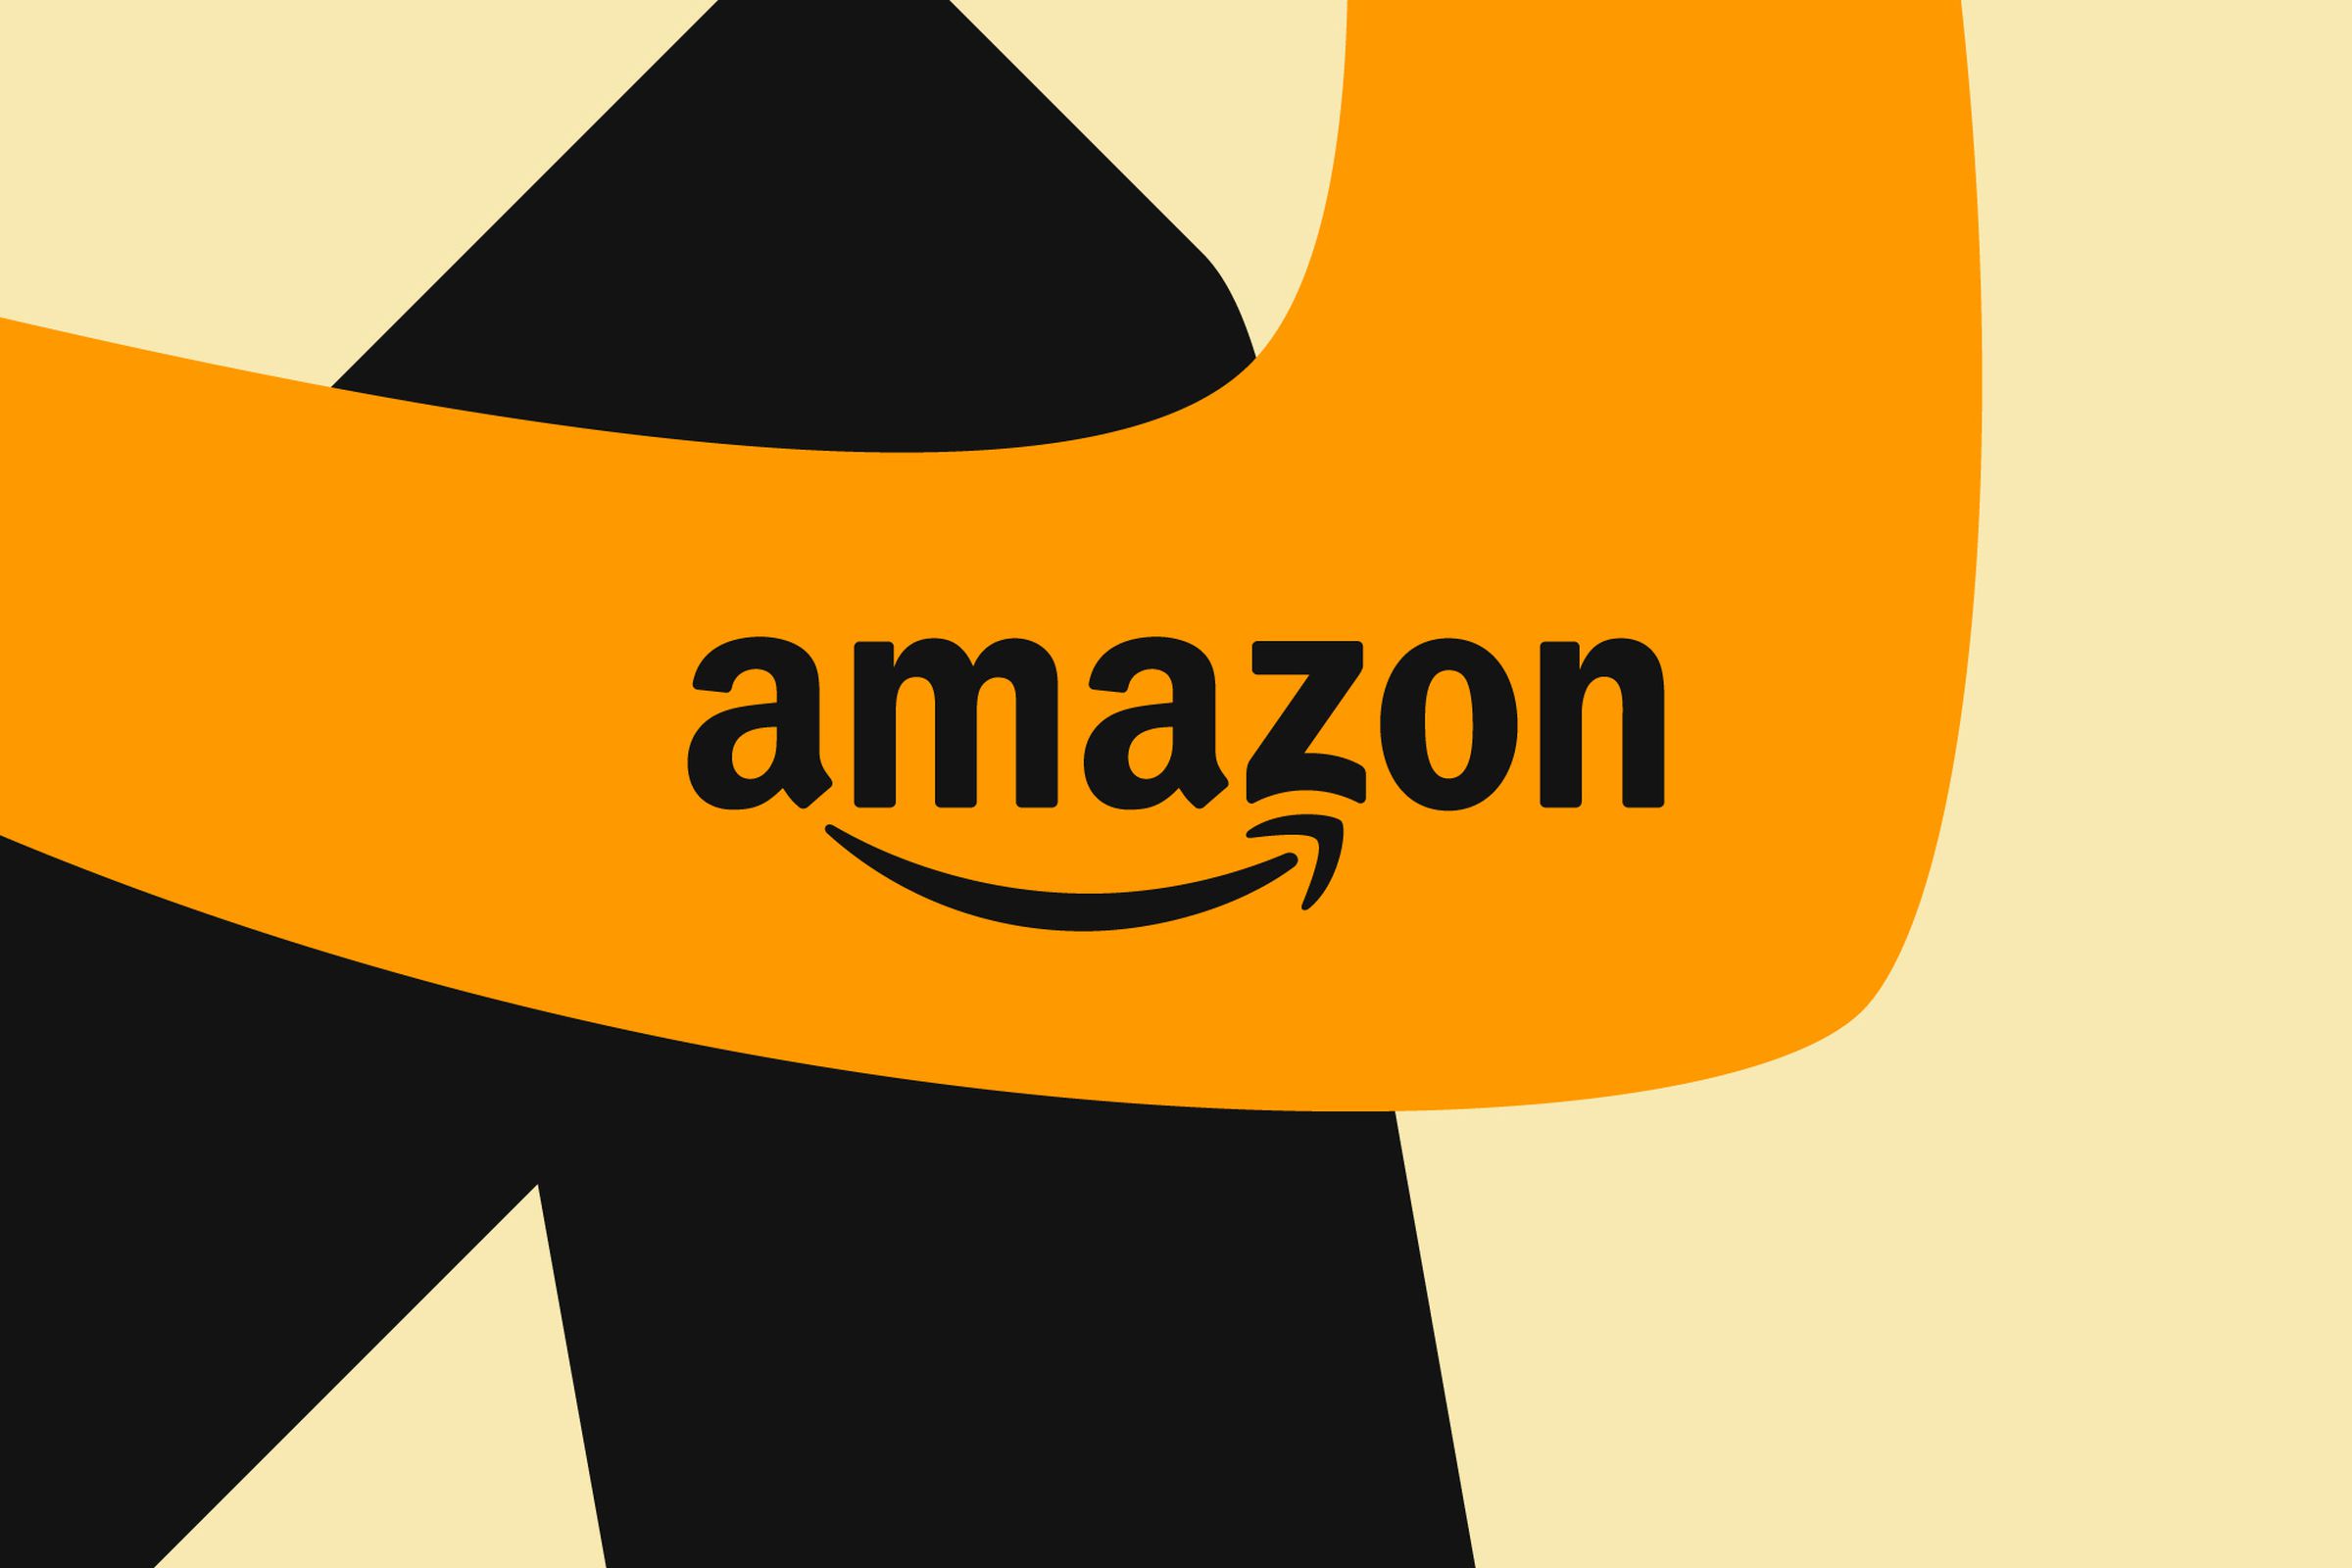 Ilustrasi tanda kata Amazon pada latar belakang oranye, hitam, dan cokelat yang terbuat dari garis-garis yang saling tumpang tindih.